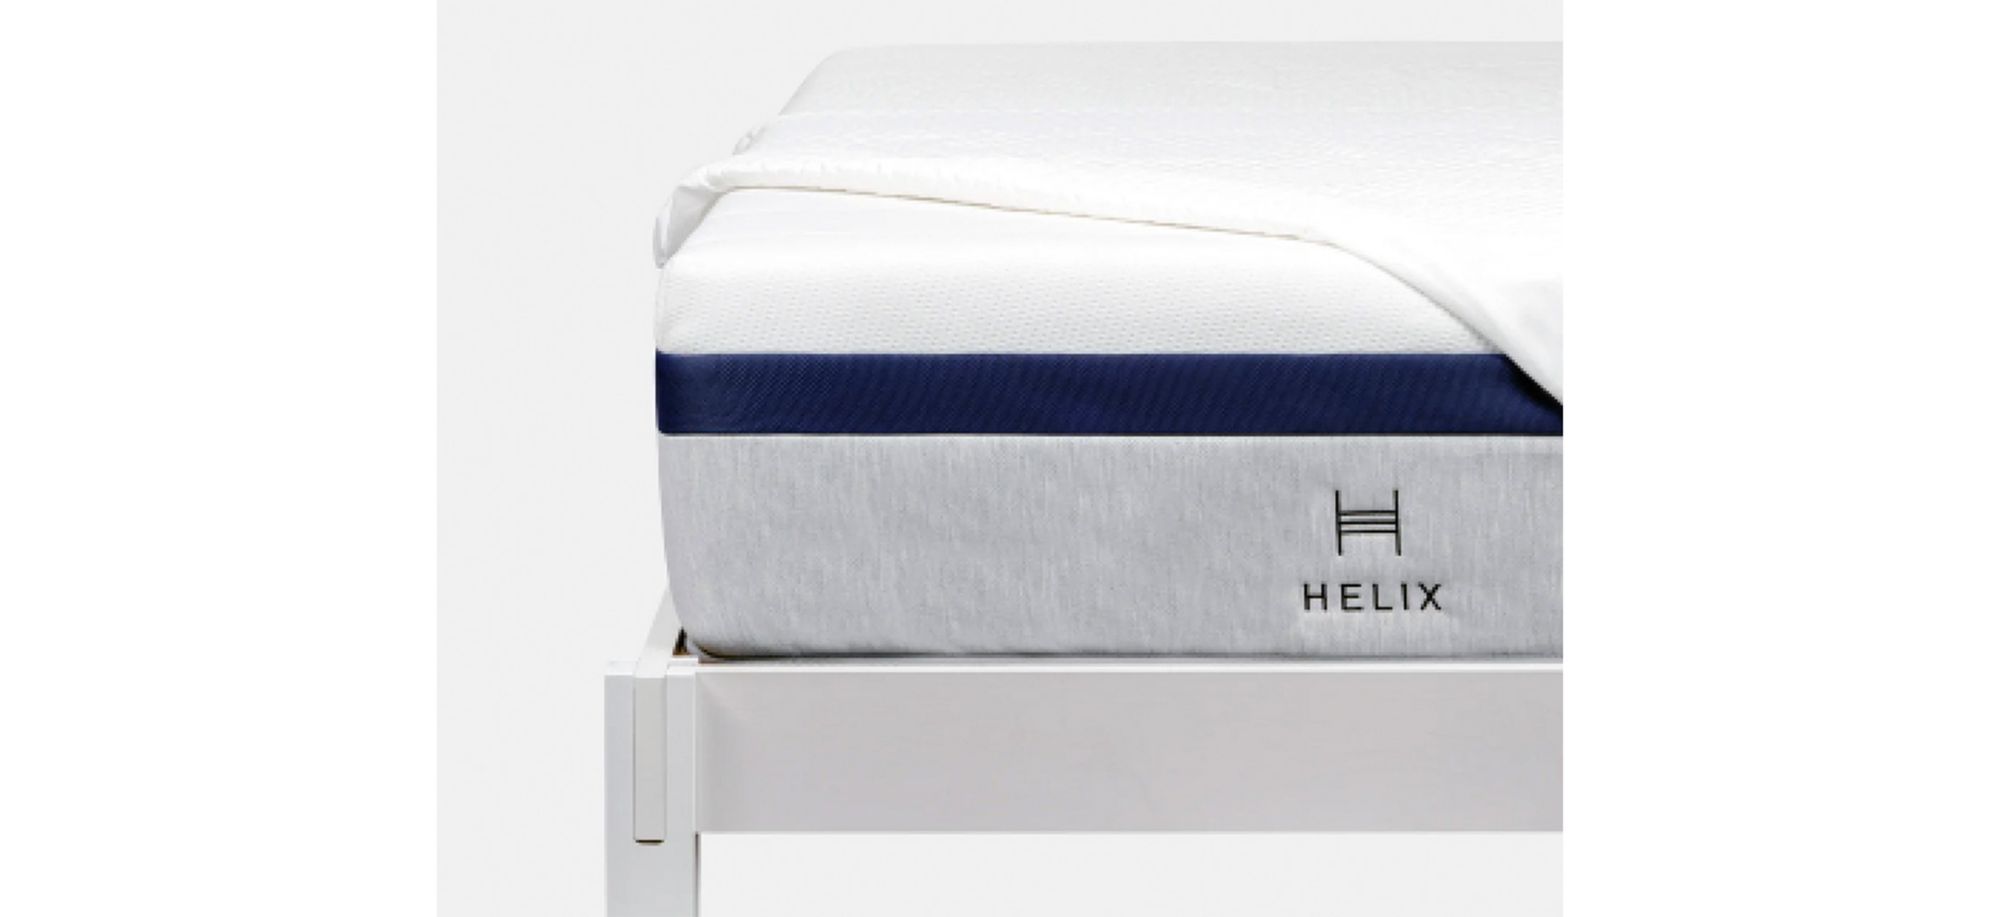 helix glaciotex mattress protector